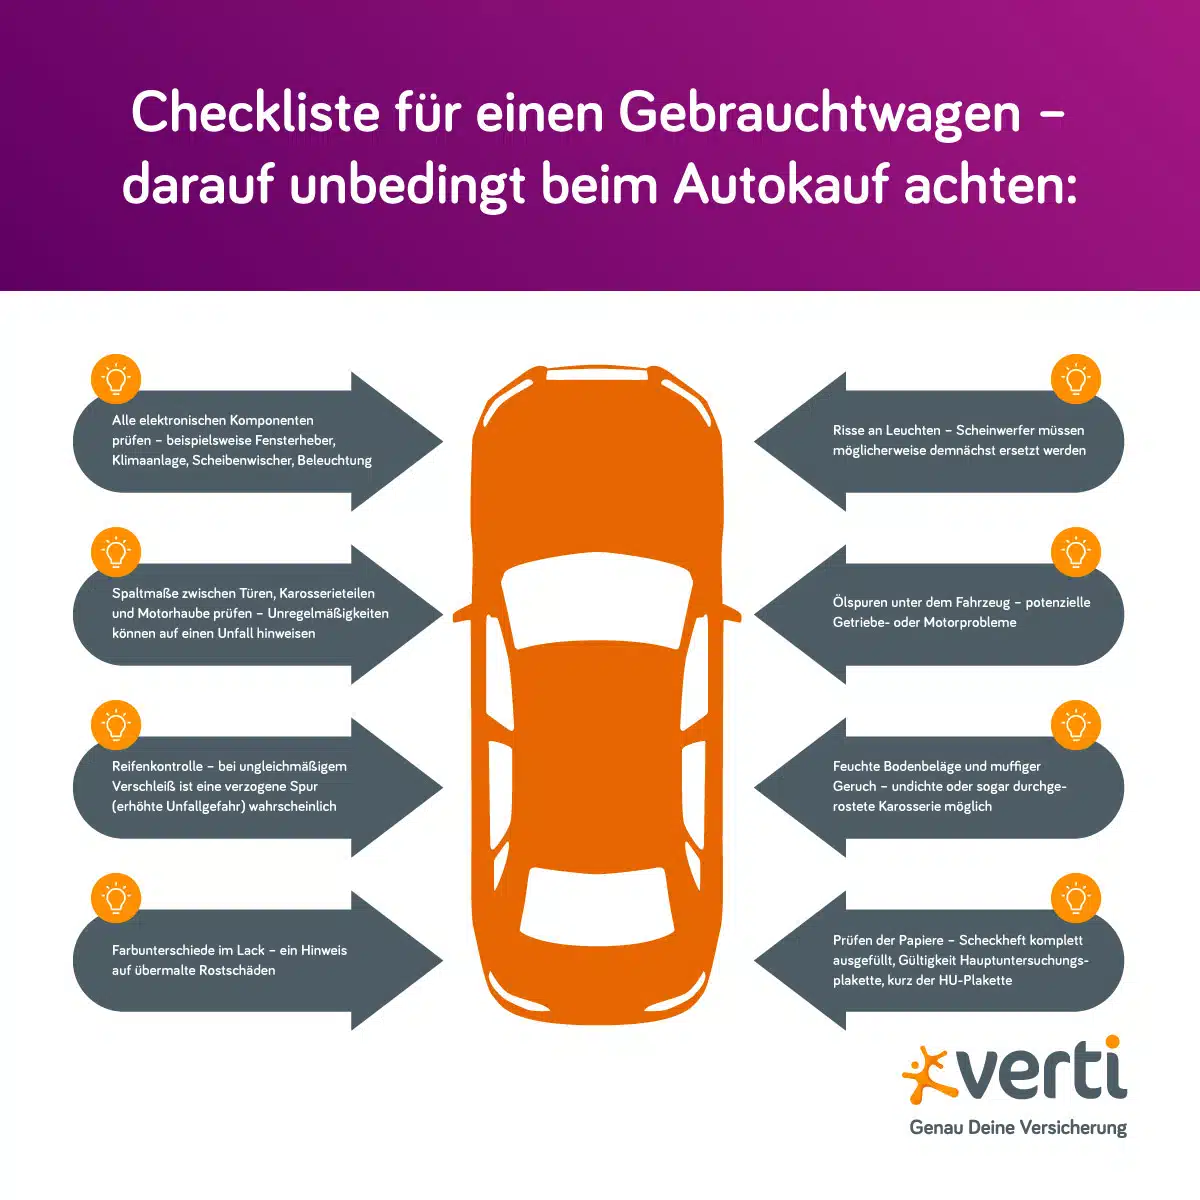 Autokauf-Checkliste für einen Gebrauchtwagen